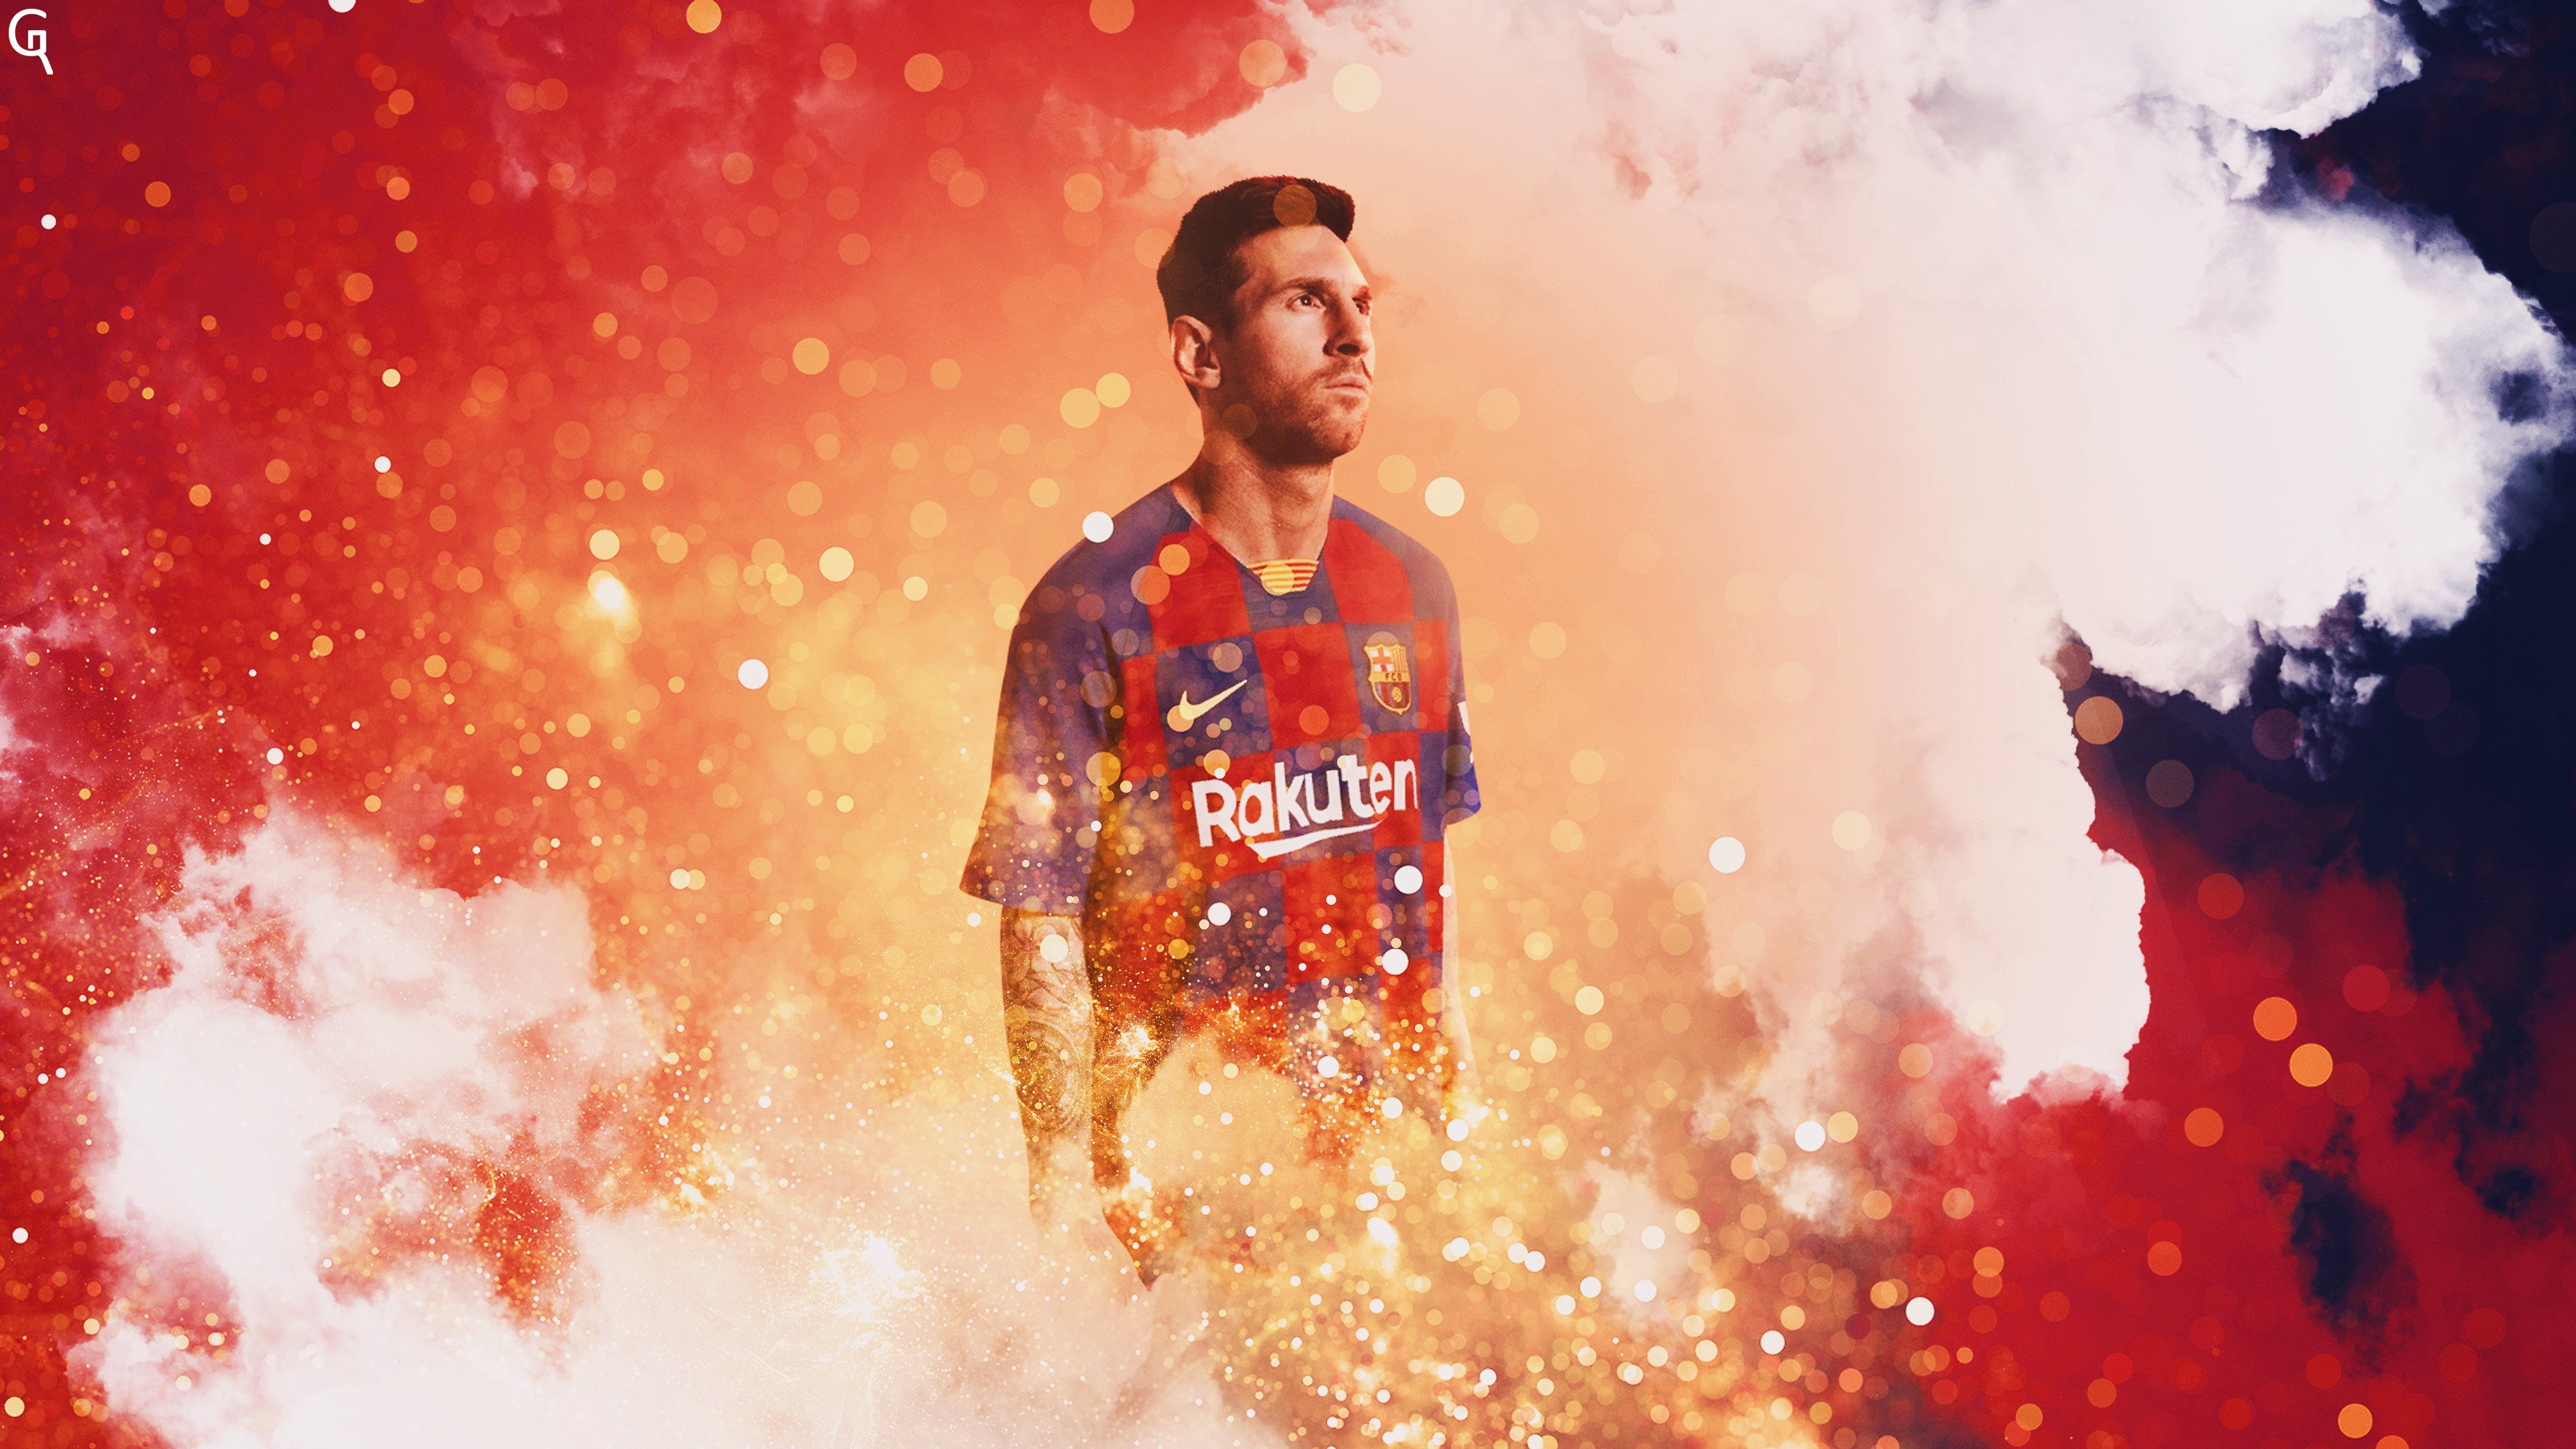 Messi 4K, hình nền: Hãy thưởng thức vẻ đẹp tuyệt vời của Messi trong độ phân giải 4K, tạo nên một hình nền cực nhã nhặn cho thiết bị của bạn.